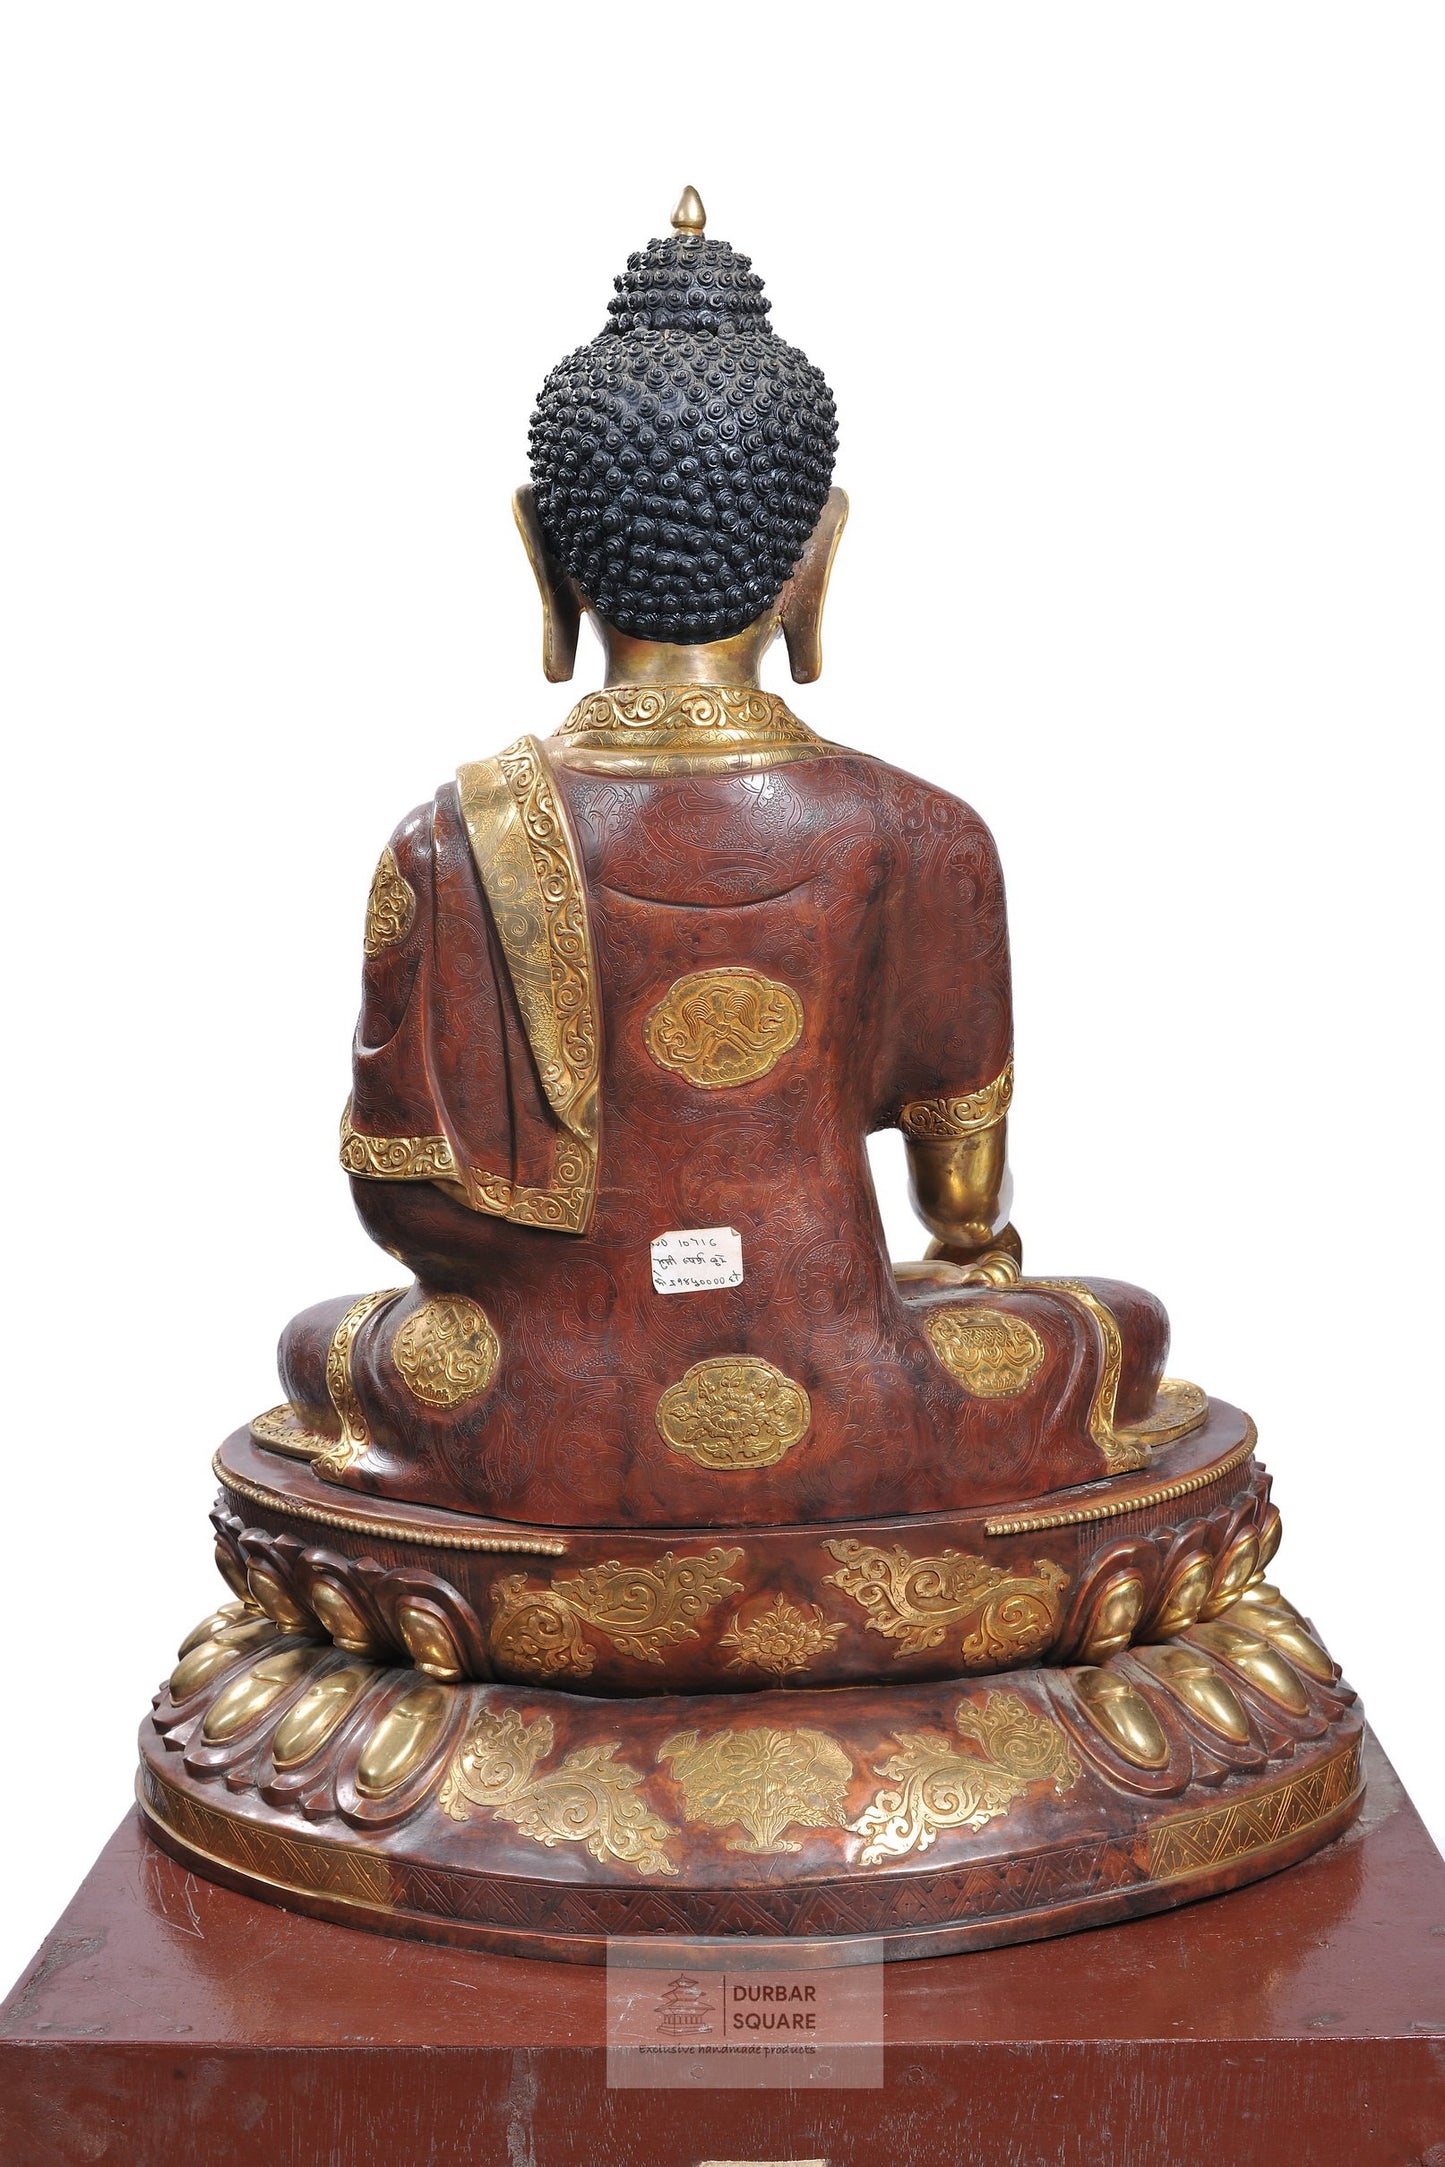 Gold plated Shakyamuni Buddha Statue